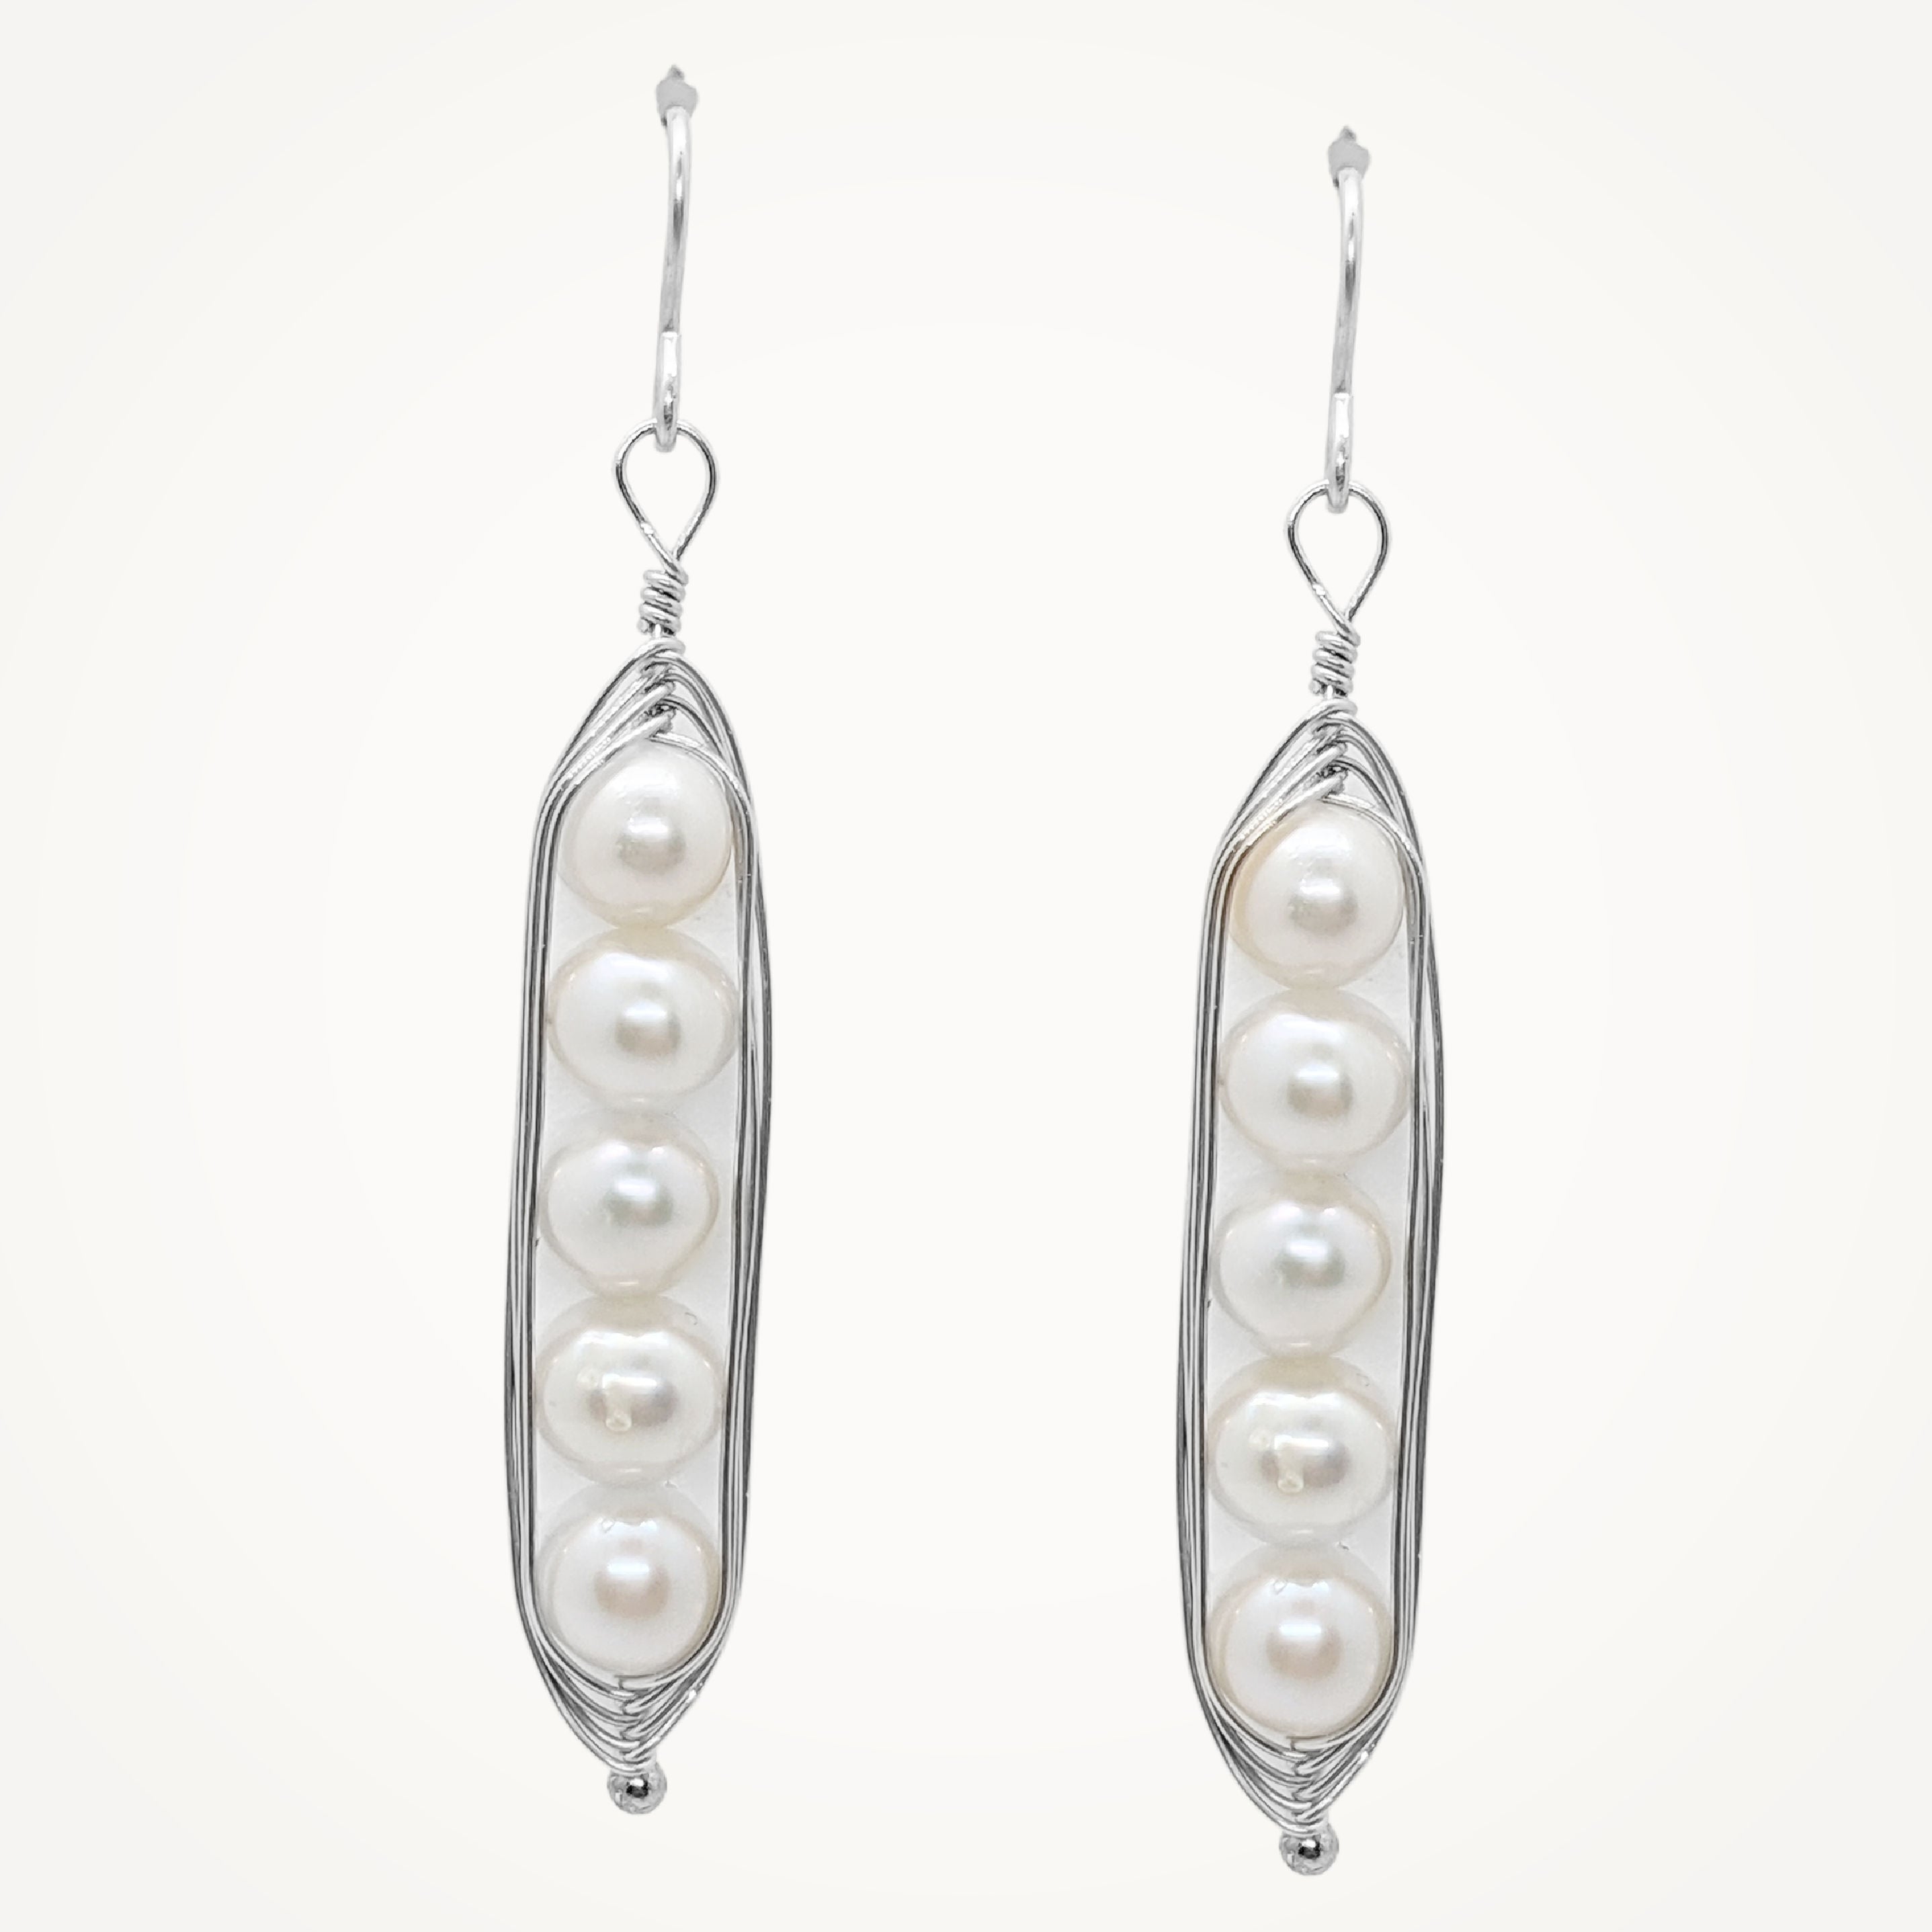 Silver Peapod Earrings • Five Peas